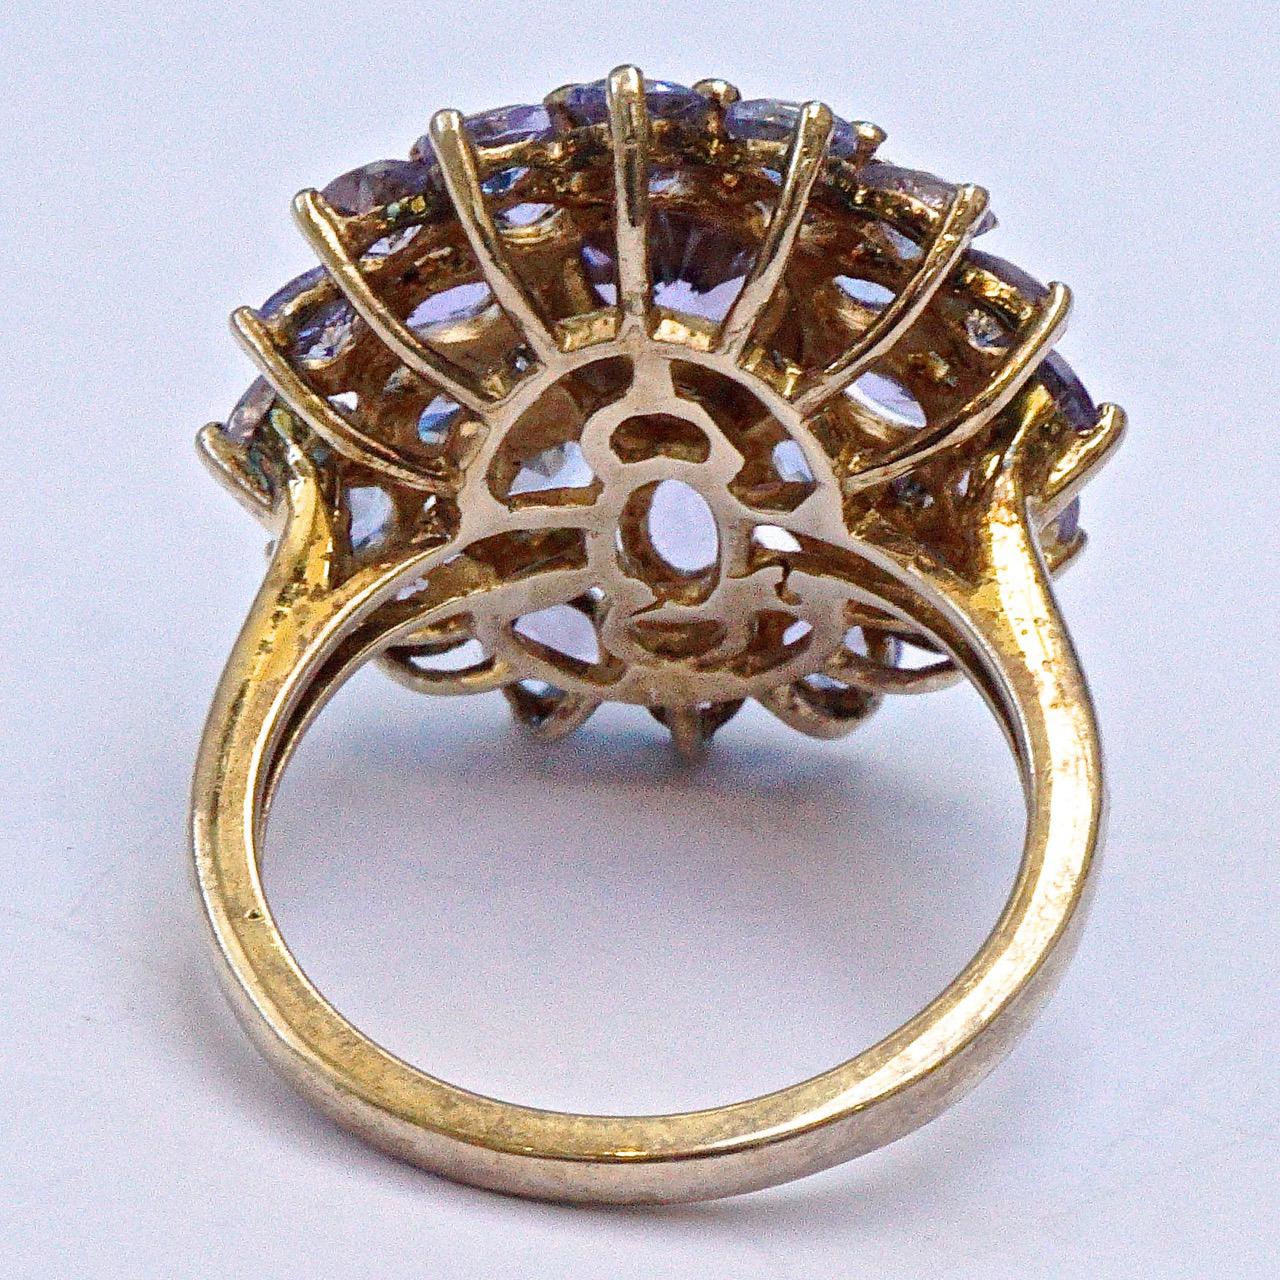 Stilvoller vergoldeter und versilberter Ring mit unechten Tansaniten in einer detaillierten Fassung. Ringgröße UK J 1/2, US 5, Innendurchmesser 1,6 cm. Die Vorderseite ist 2,1 cm mal 1,9 cm groß. Der Ring ist mit 925 markiert.

Dies ist ein schönes